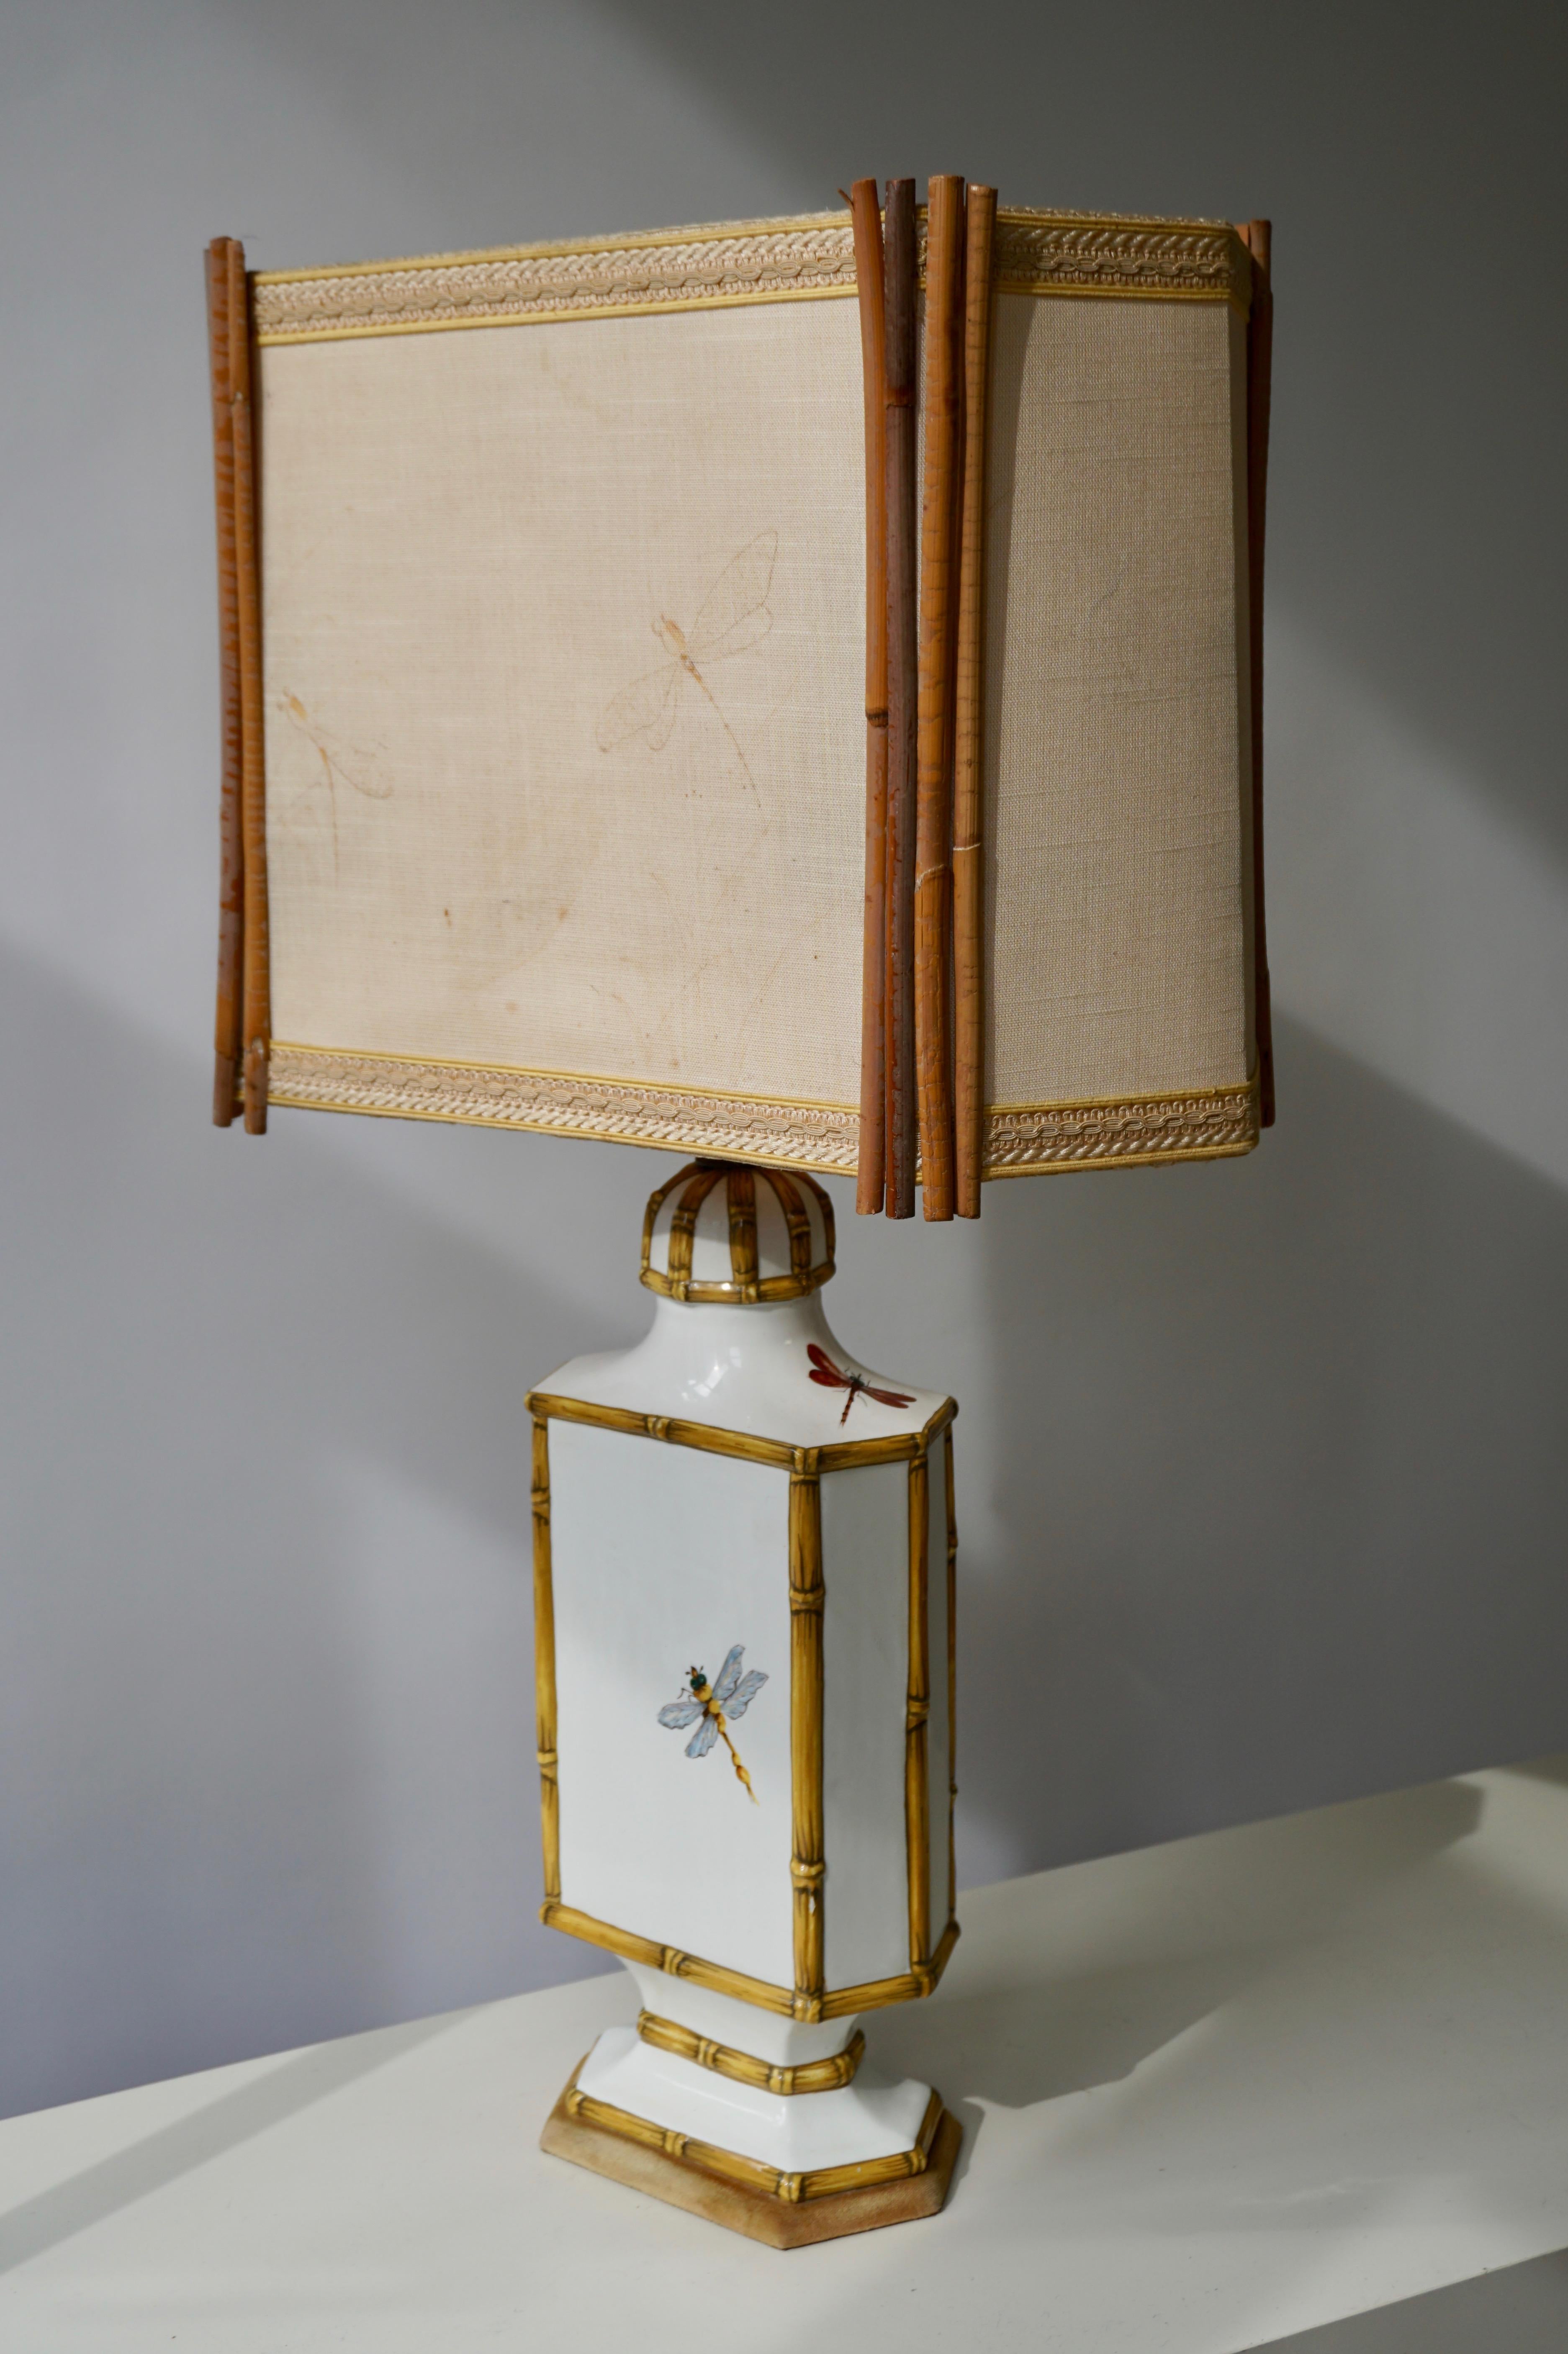 Rare lampe de table libellule Art Nouveau en céramique avec abat-jour original en bambou.
Mesures : Hauteur 75 cm.
Largeur 40 cm.
Profondeur 23 cm.
Poids 3 kg.